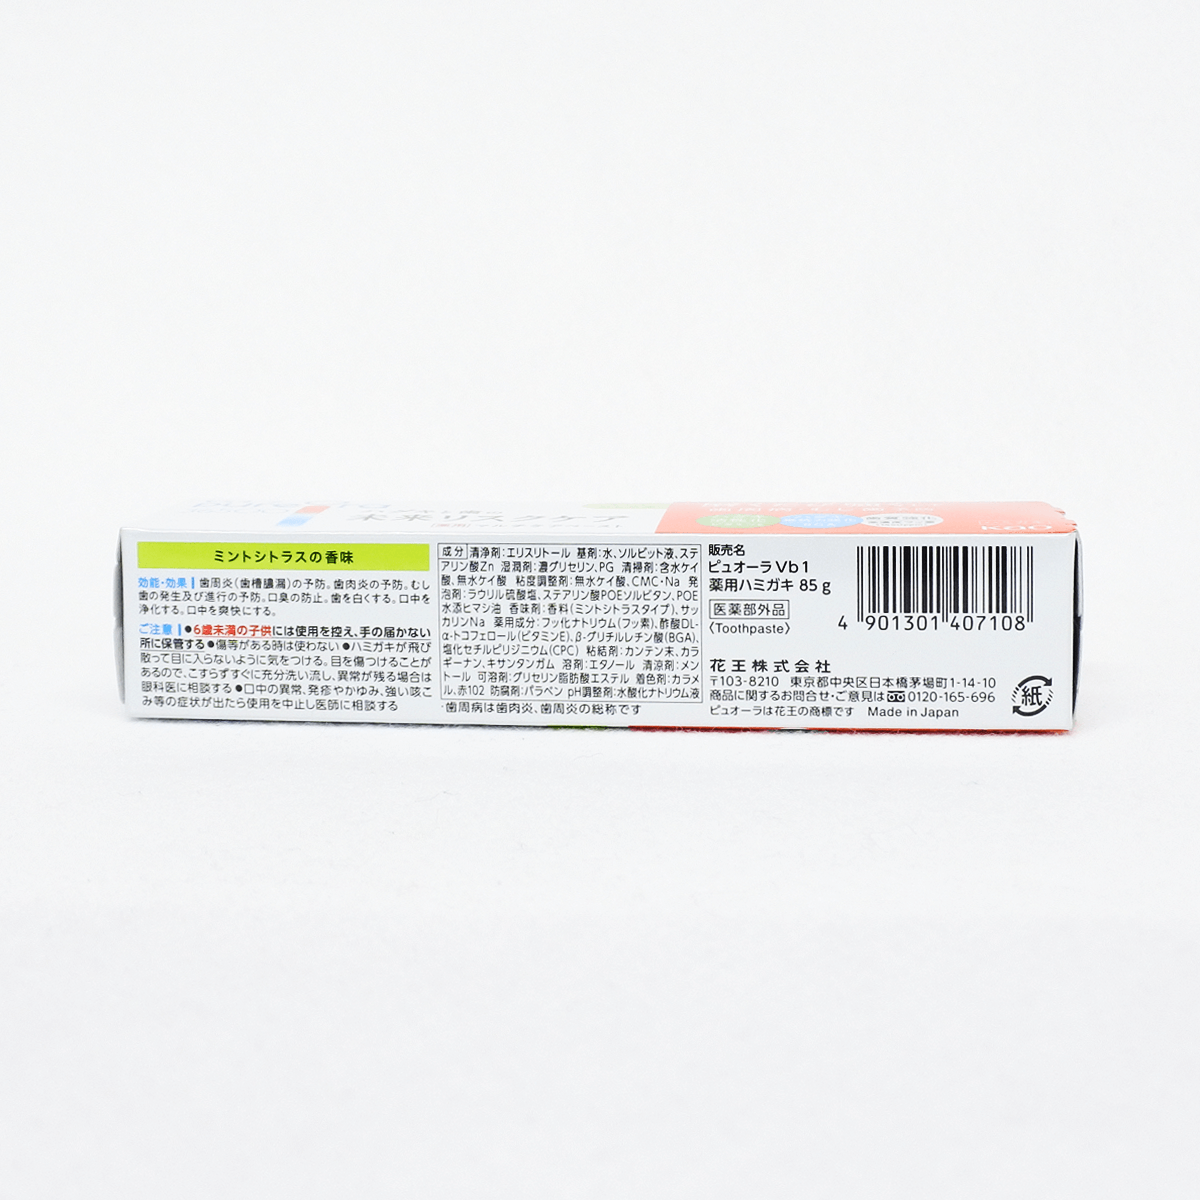 PureOra36500 藥用全方位護理牙膏 薄荷柑橘味 85g